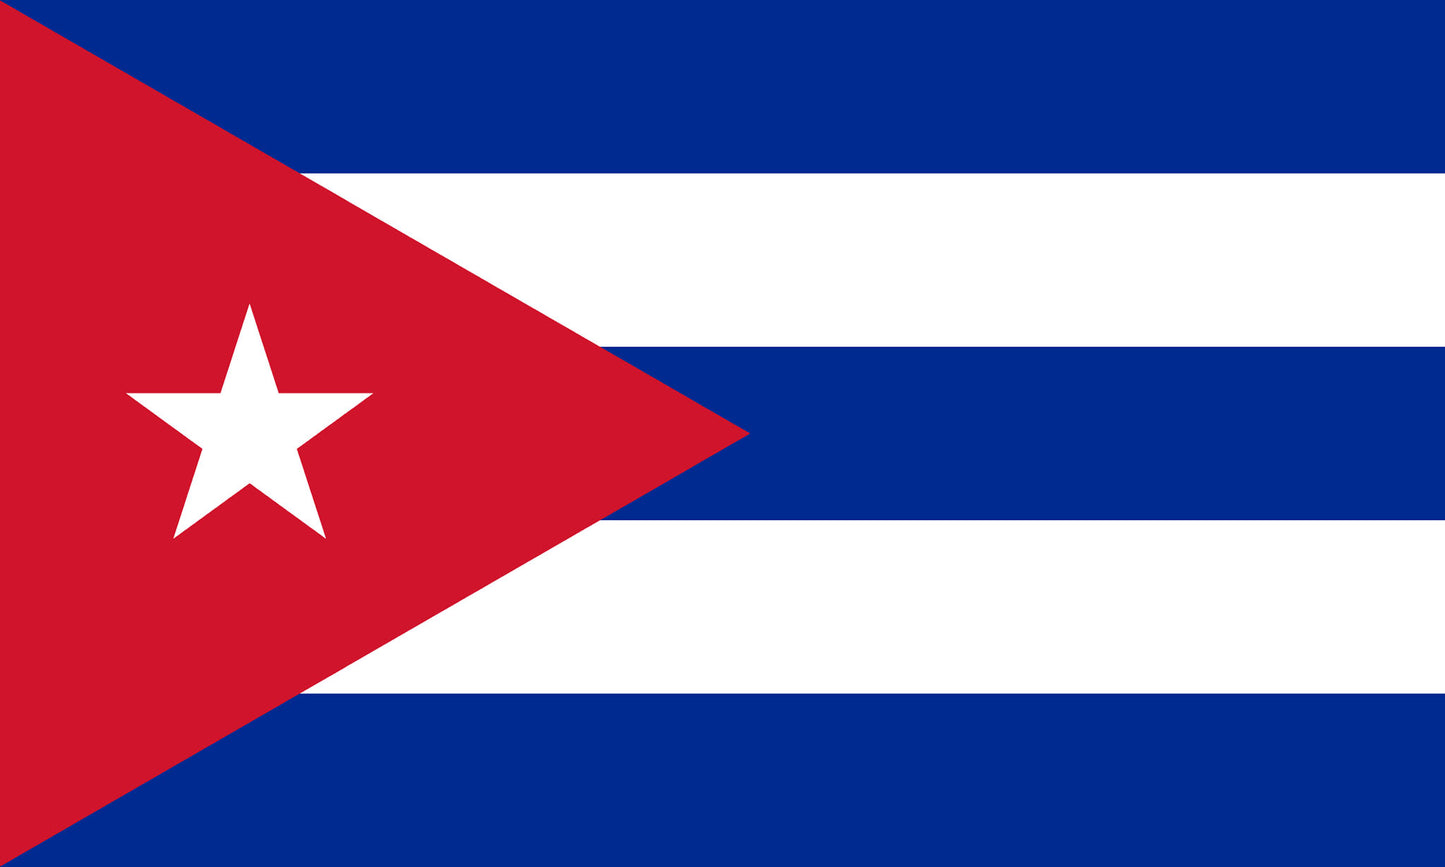 INR-CUB-15x22-2 - государственный флаг Кубы, размер: 15х22 см, материал: атлас. Печать с двух сторон. Подставка и шток приобретаются отдельно